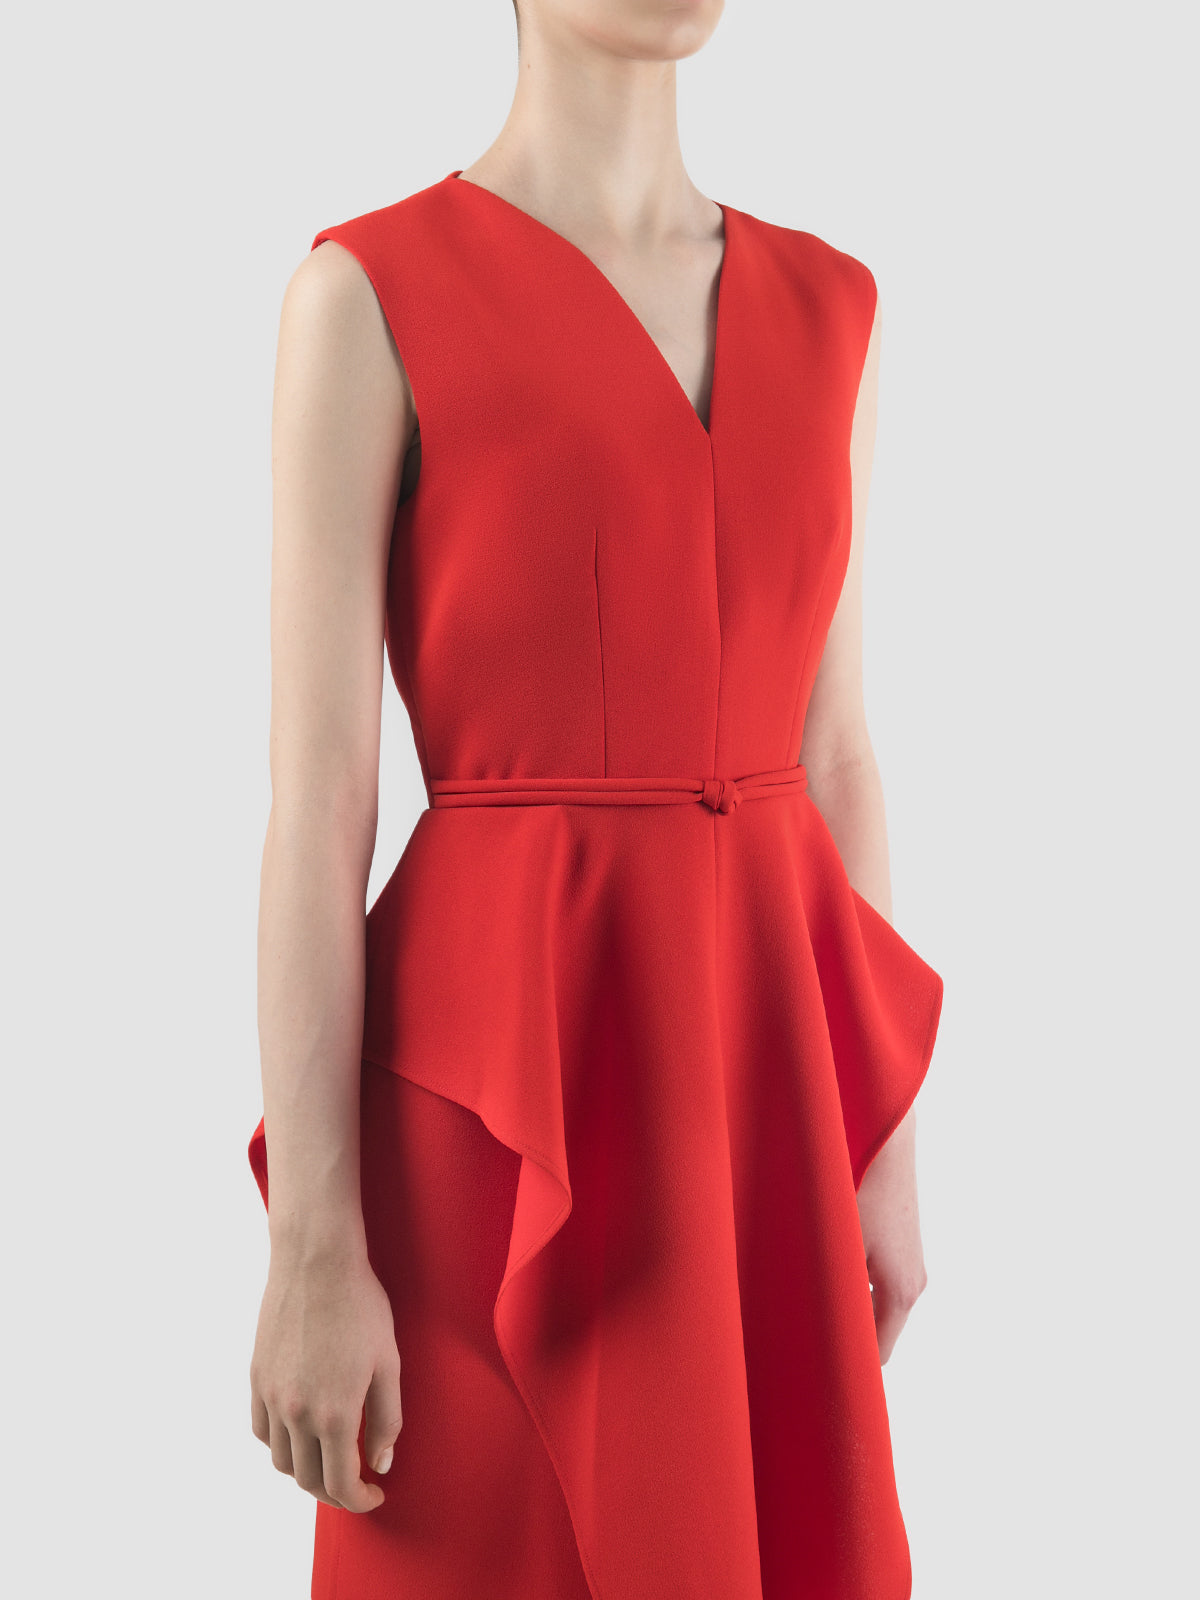 Giocoso scarlet red sleeveless maxi-dress